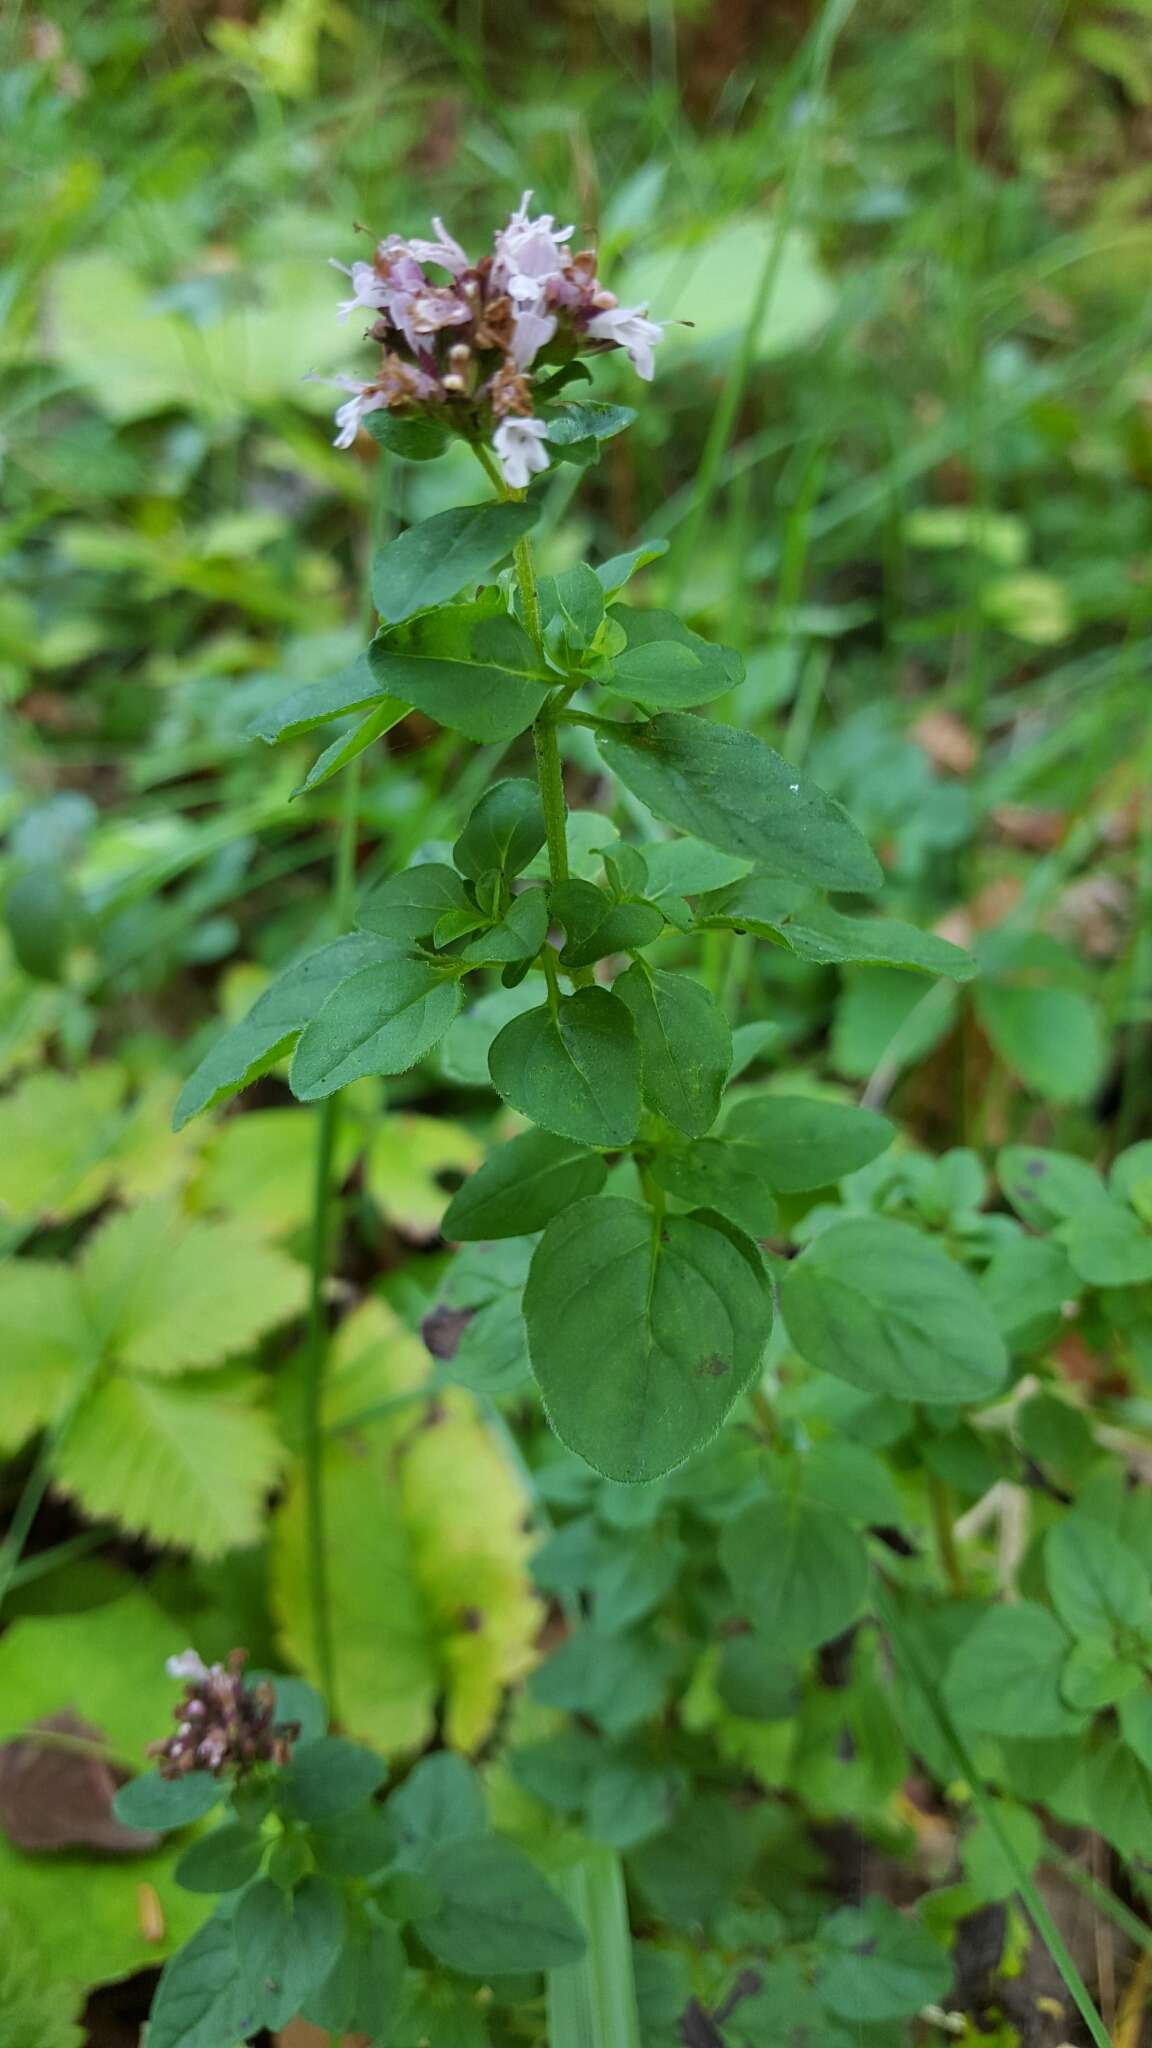 Image of Origanum vulgare subsp. vulgare